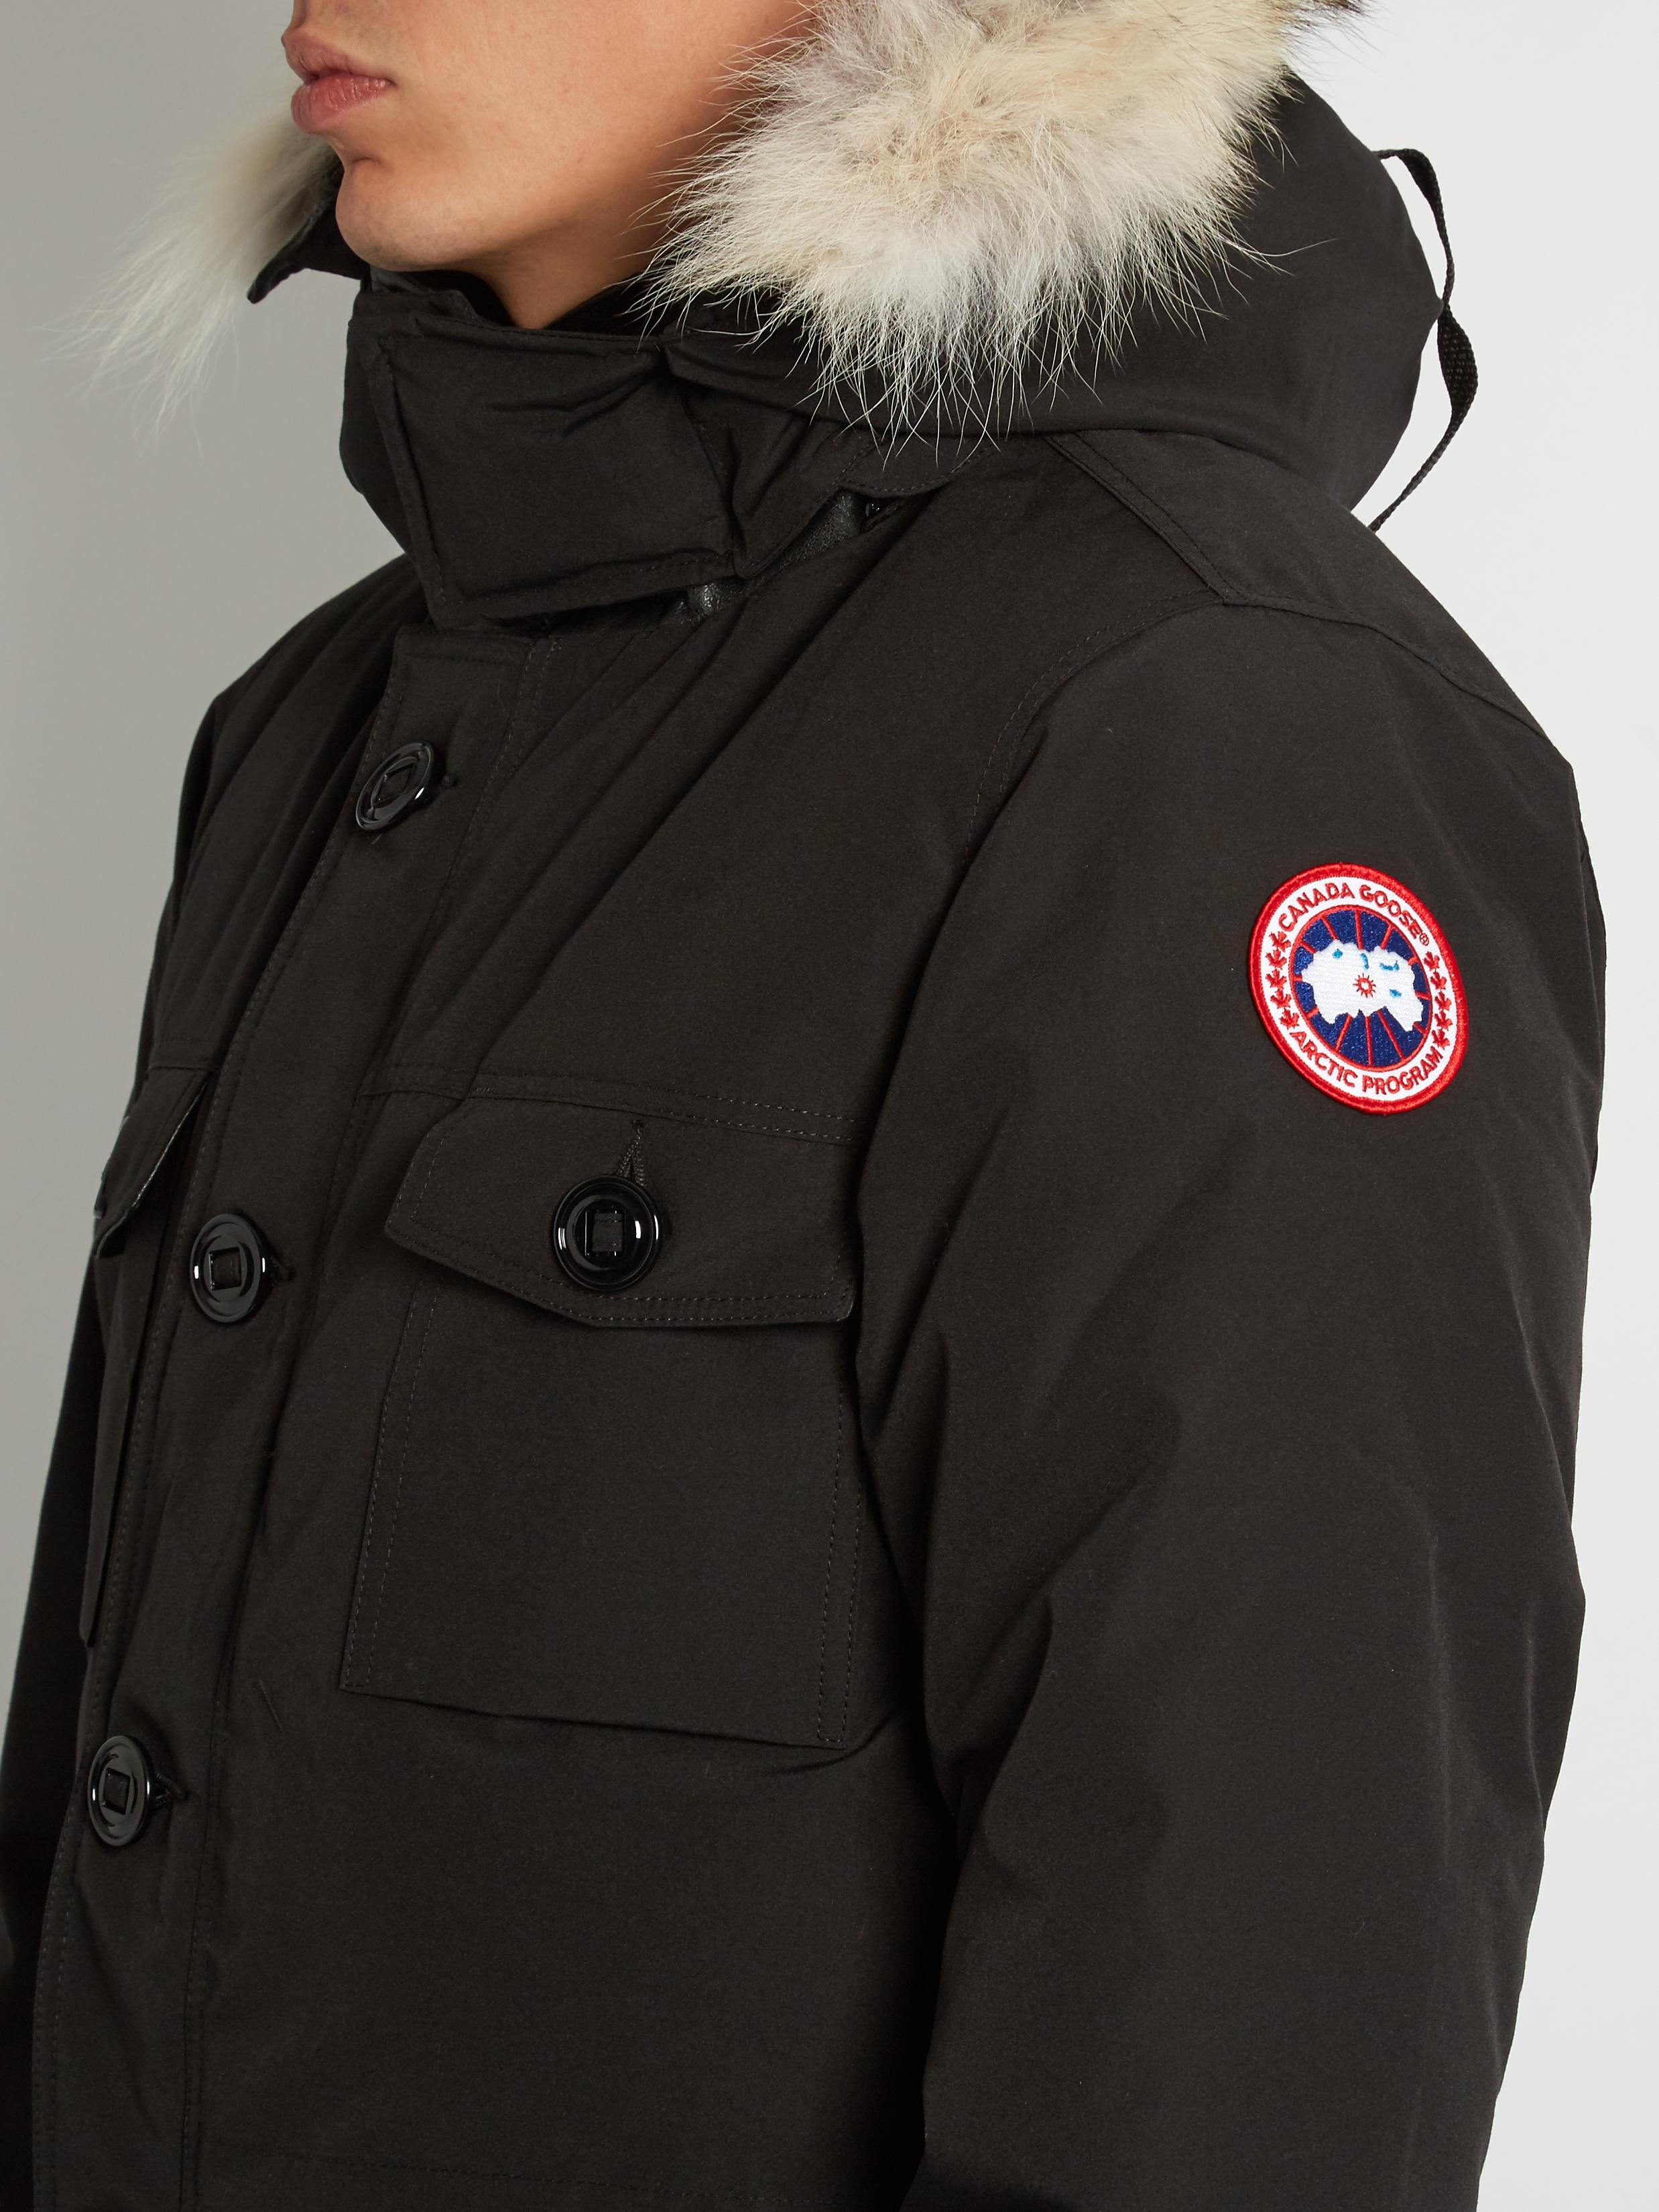 Canada Goose Banff Fur-trimmed Down Parka in Black for Men - Lyst